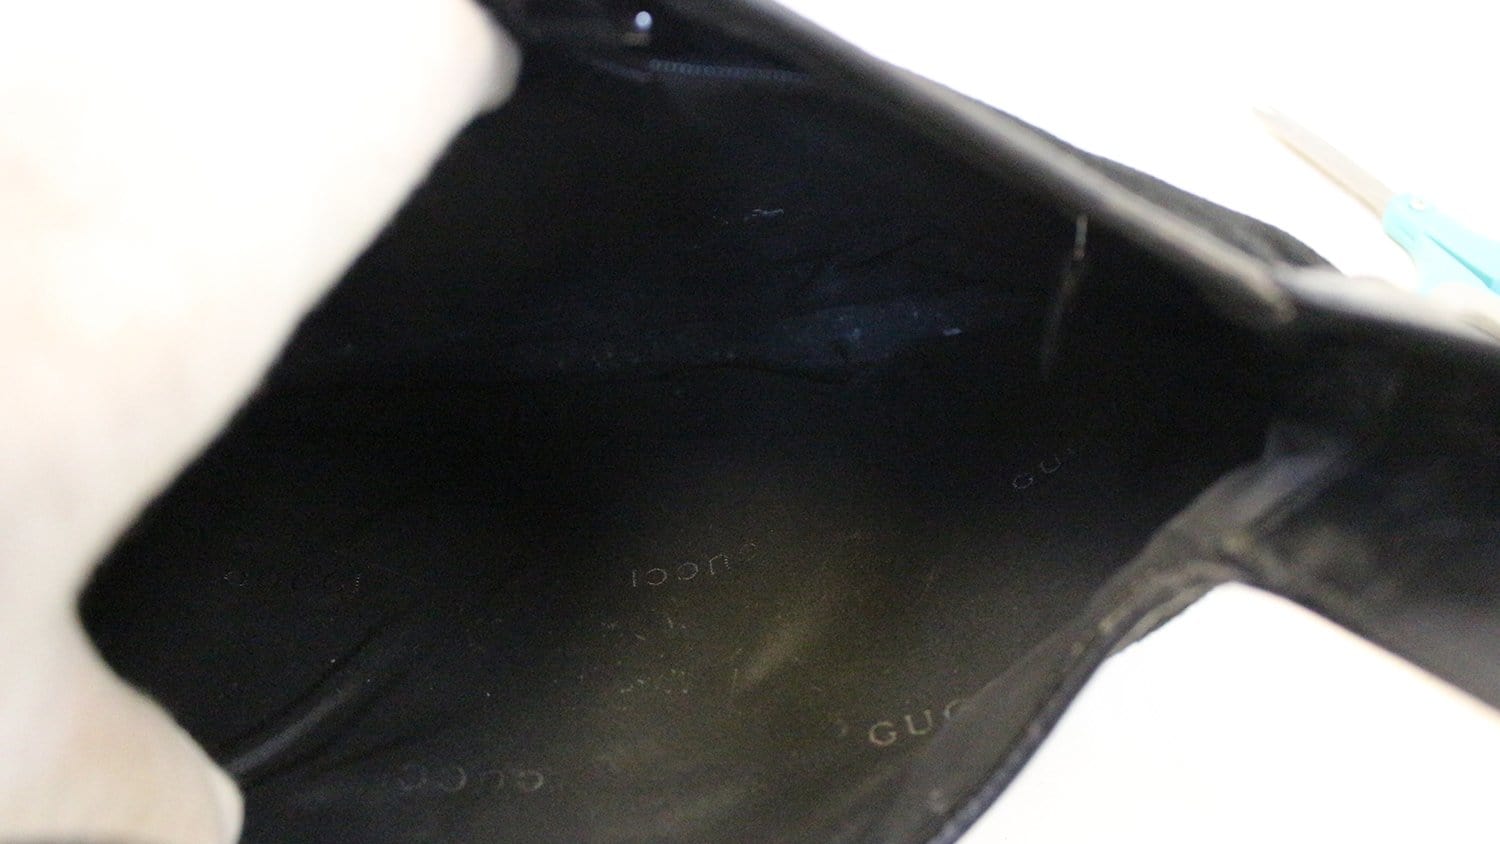 Hobo handbag Gucci Black in Suede - 36181607